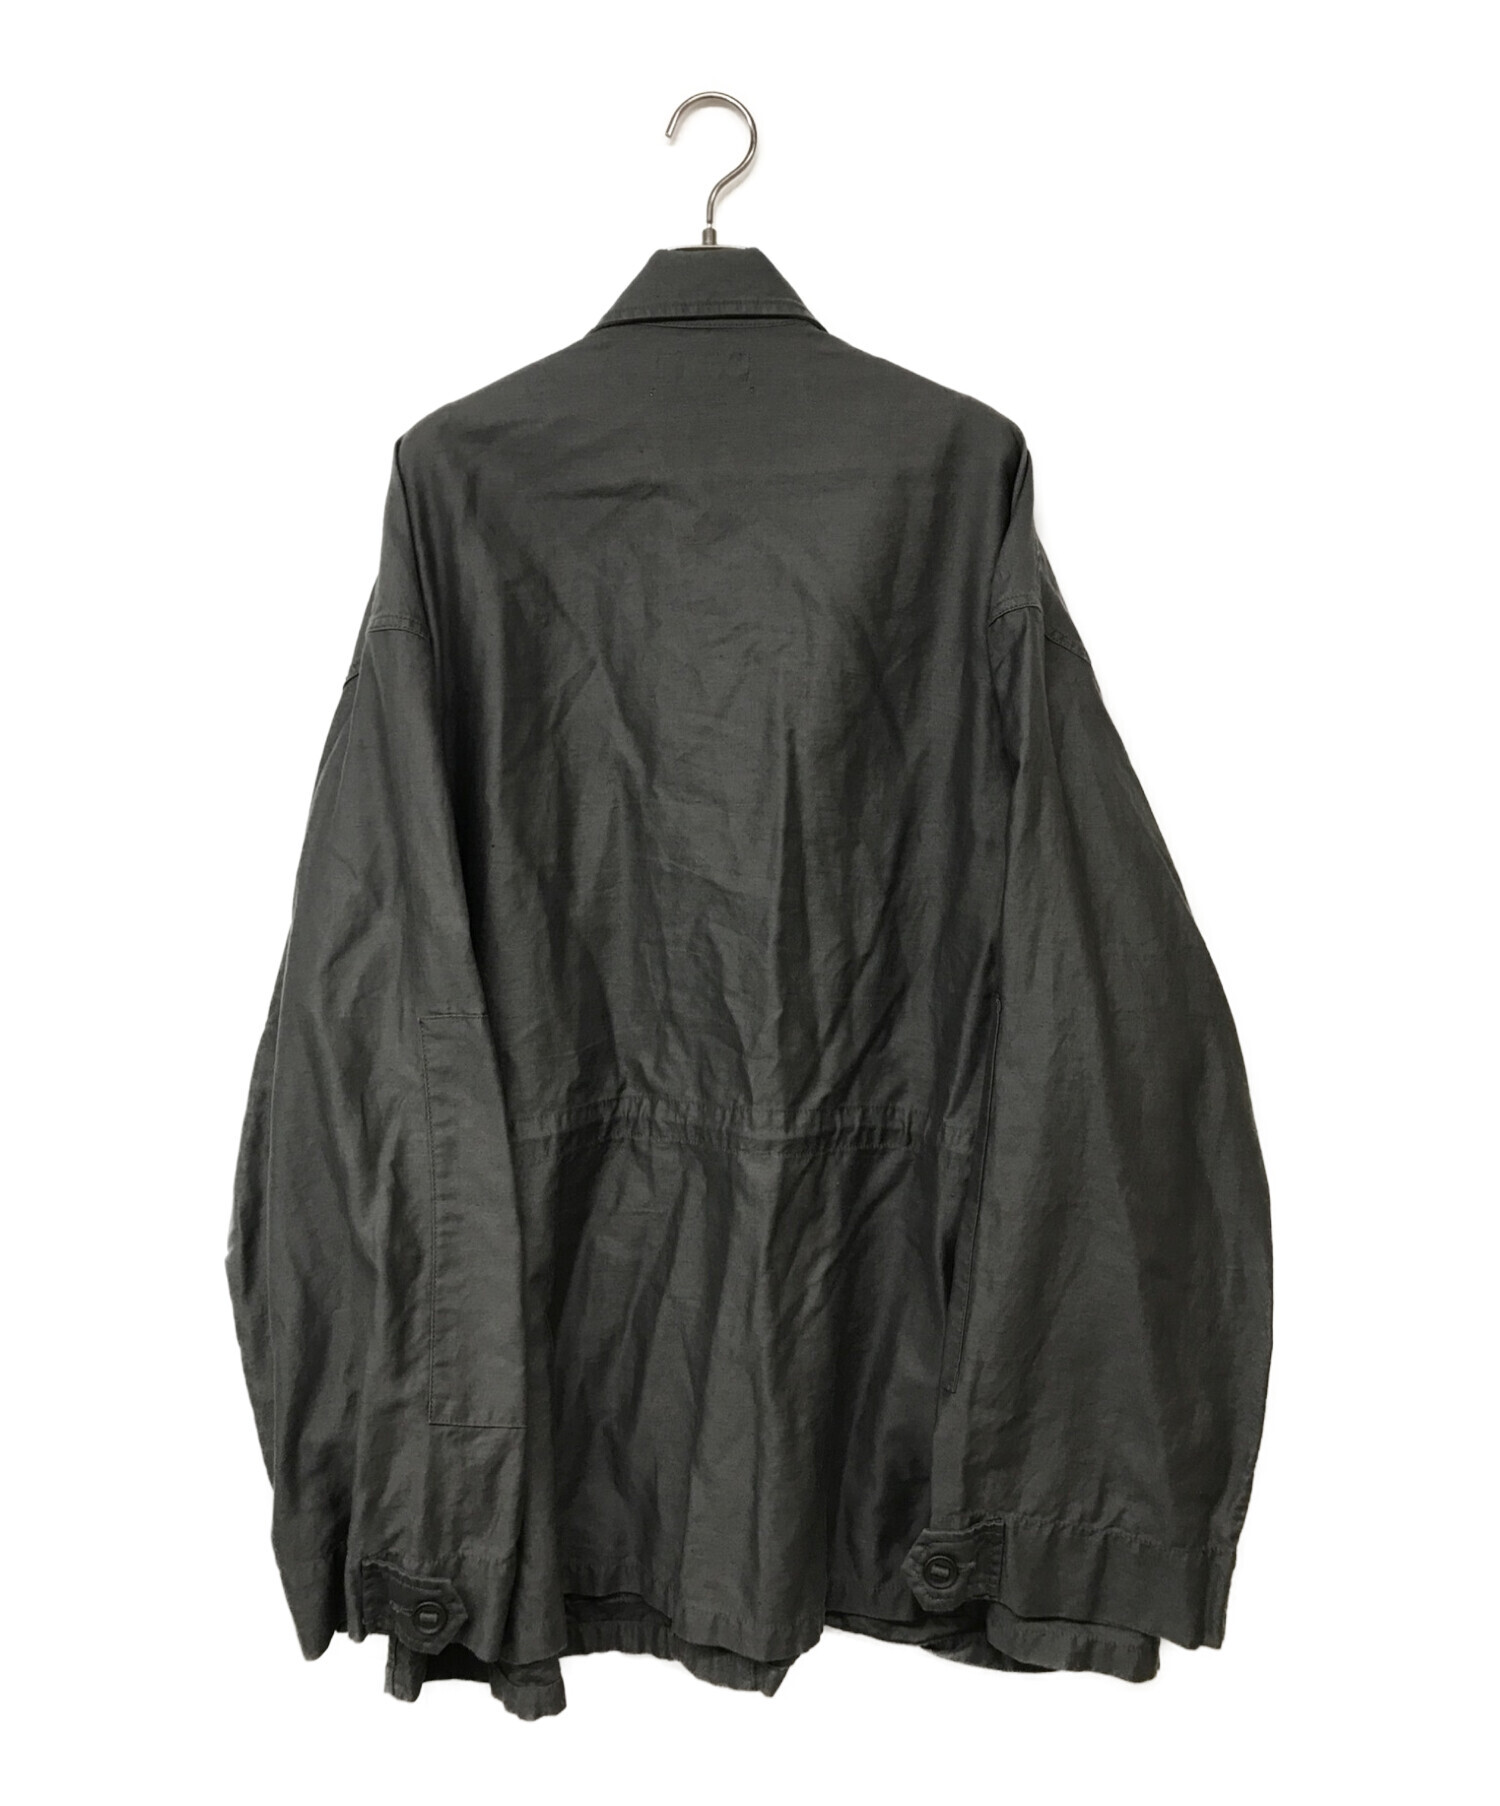 Graphpaper (グラフペーパー) Cotton Linen Moleskin Military  Jacket/コットンリネンモールスキンジャケット グレー サイズ:2